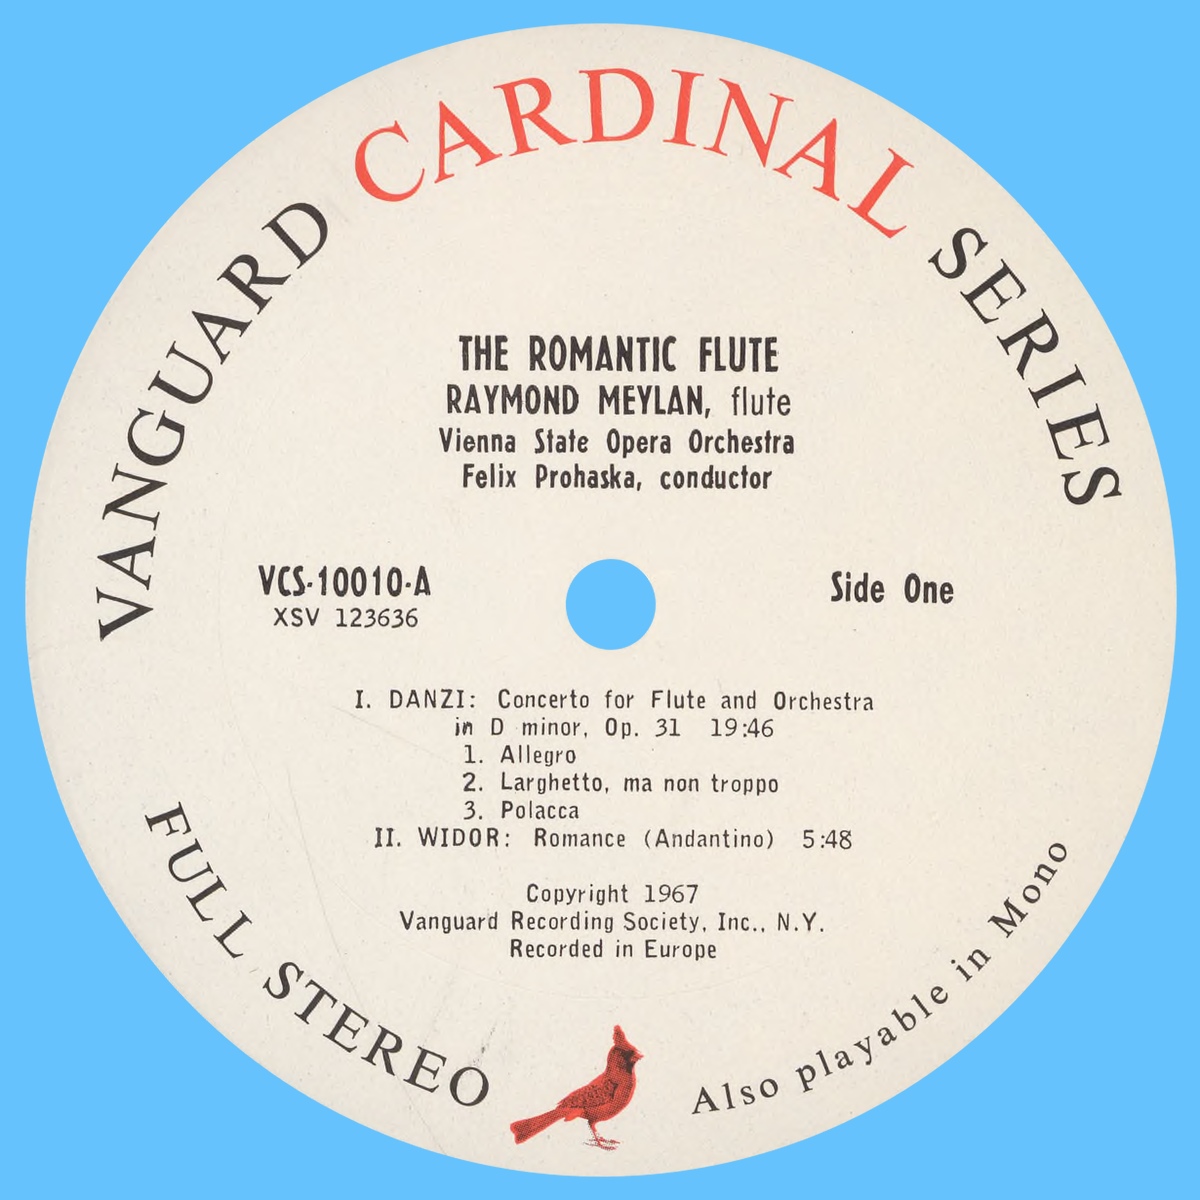 Étiquette recto de la pochette du disque Vanguard VCS 10010